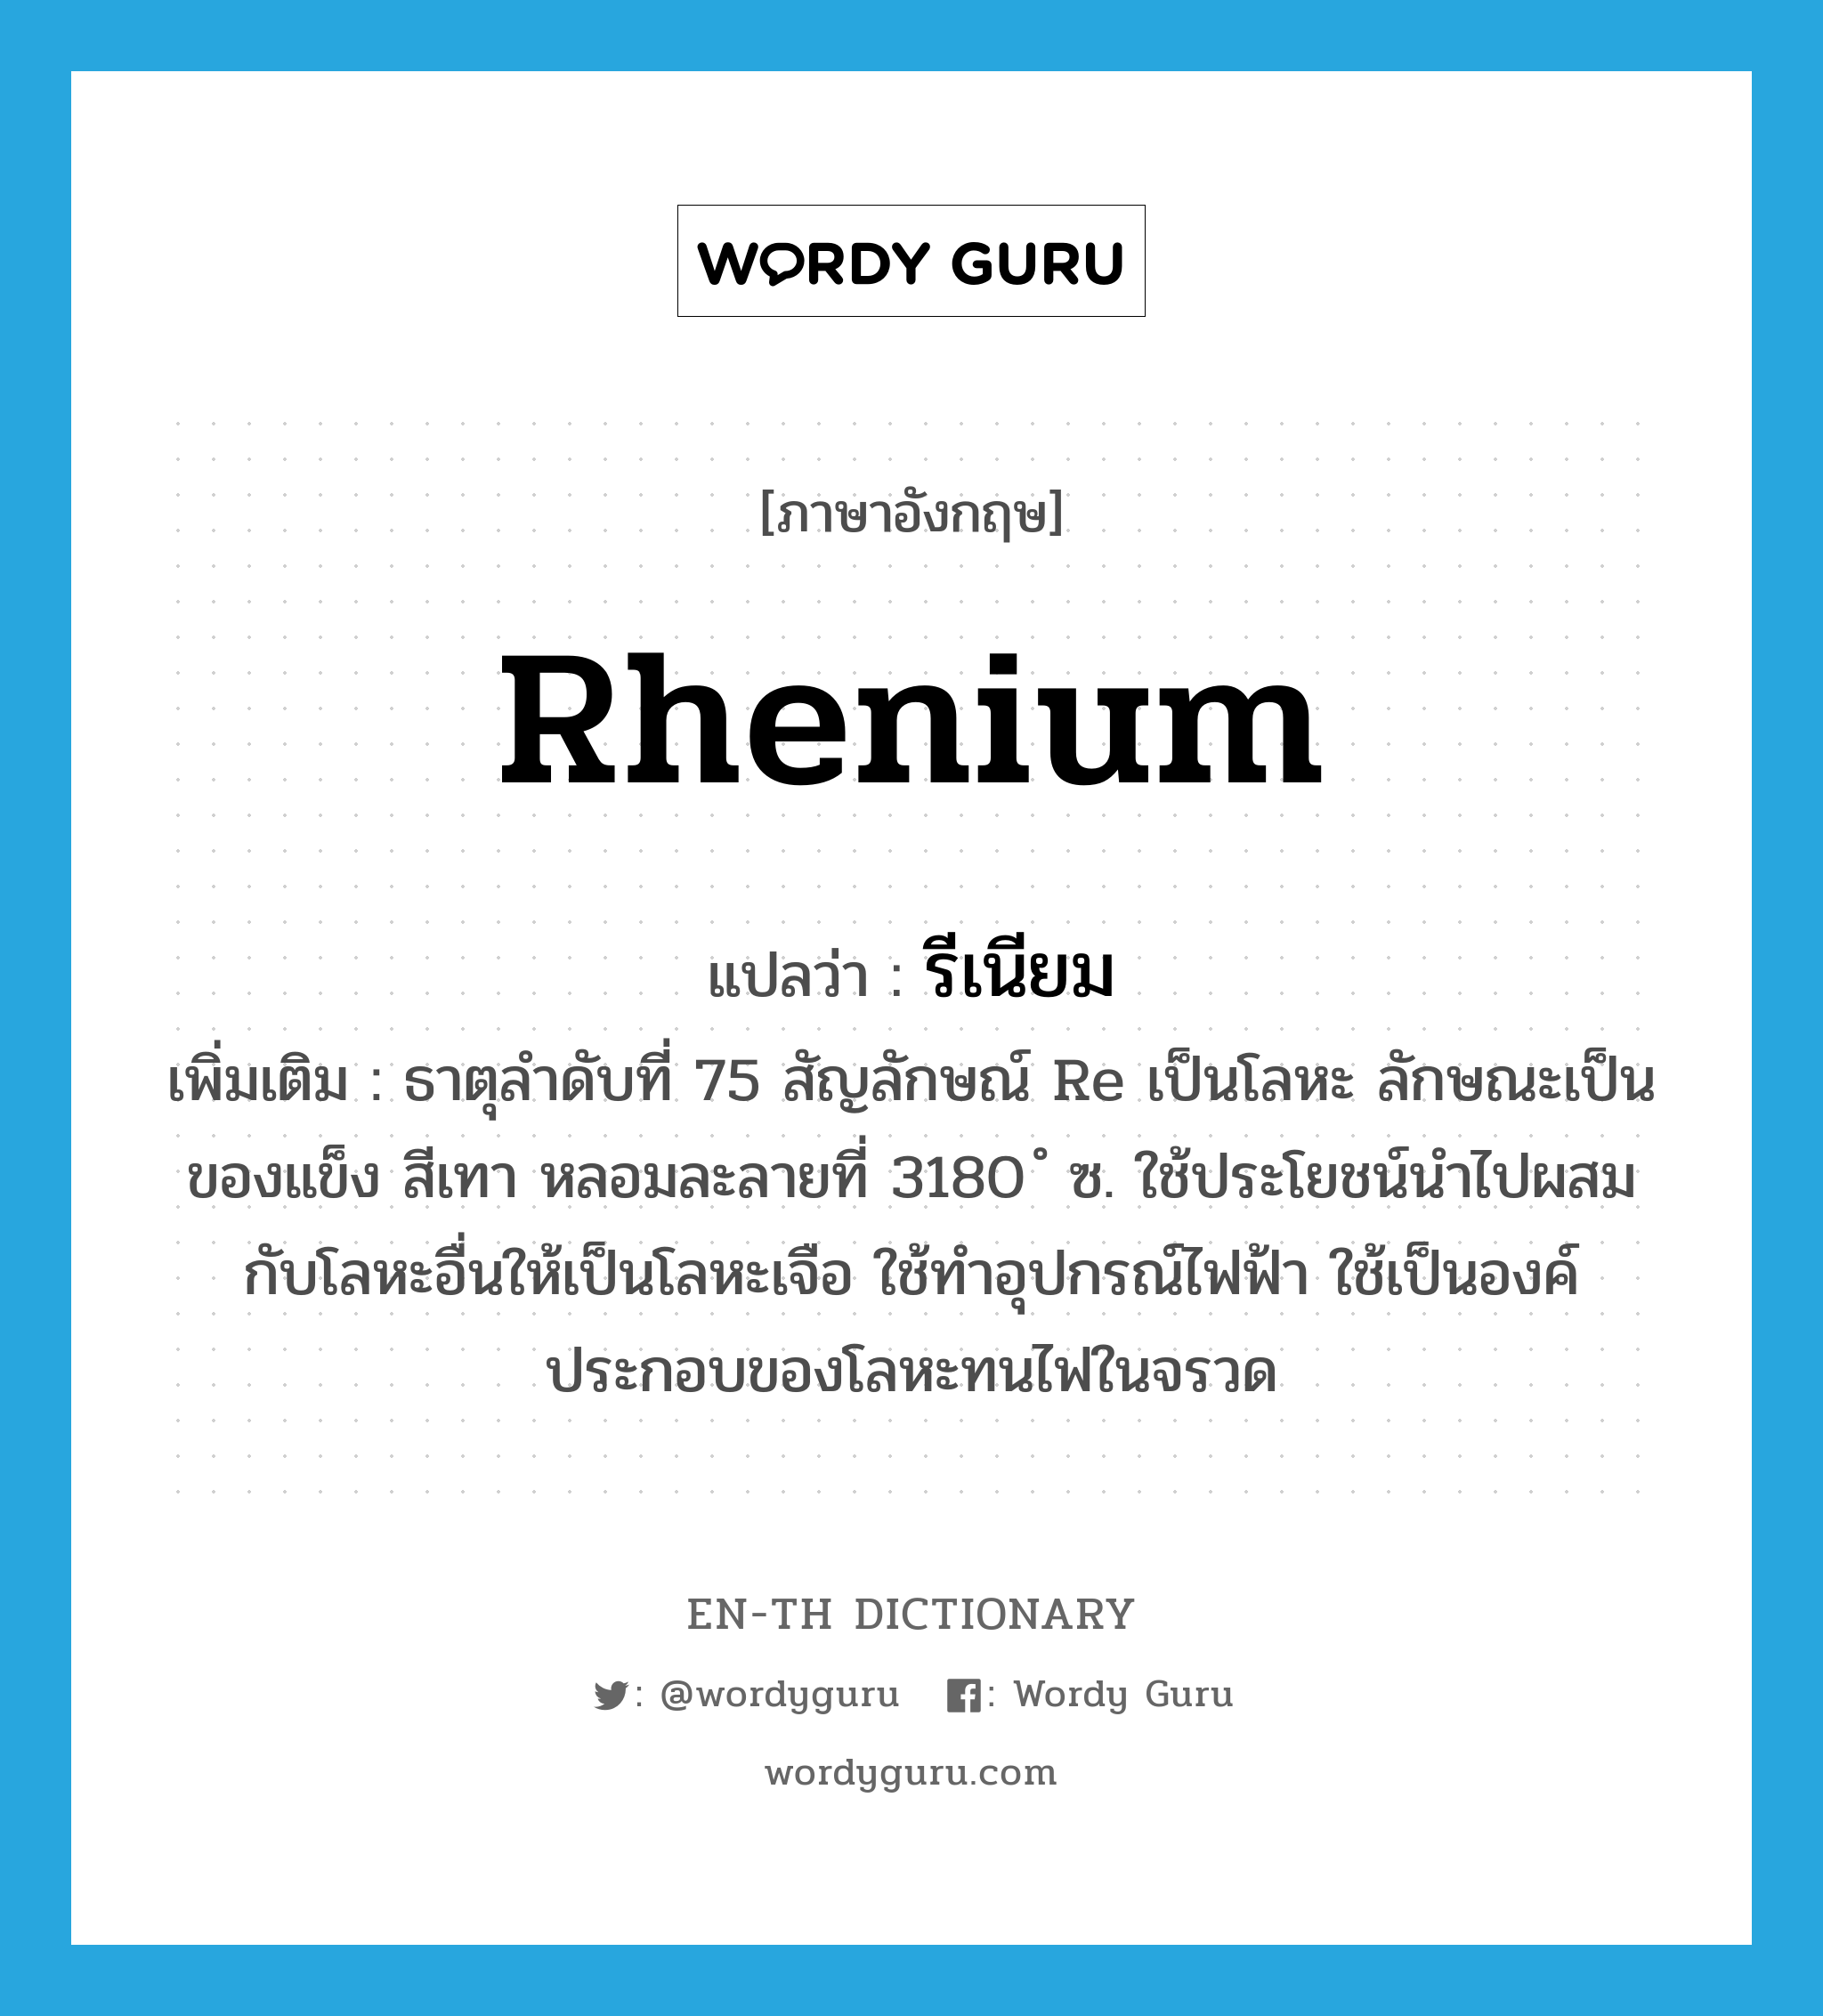 rhenium แปลว่า?, คำศัพท์ภาษาอังกฤษ rhenium แปลว่า รีเนียม ประเภท N เพิ่มเติม ธาตุลำดับที่ 75 สัญลักษณ์ Re เป็นโลหะ ลักษณะเป็นของแข็ง สีเทา หลอมละลายที่ 3180 ํ ซ. ใช้ประโยชน์นำไปผสมกับโลหะอื่นให้เป็นโลหะเจือ ใช้ทำอุปกรณ์ไฟฟ้า ใช้เป็นองค์ประกอบของโลหะทนไฟในจรวด หมวด N